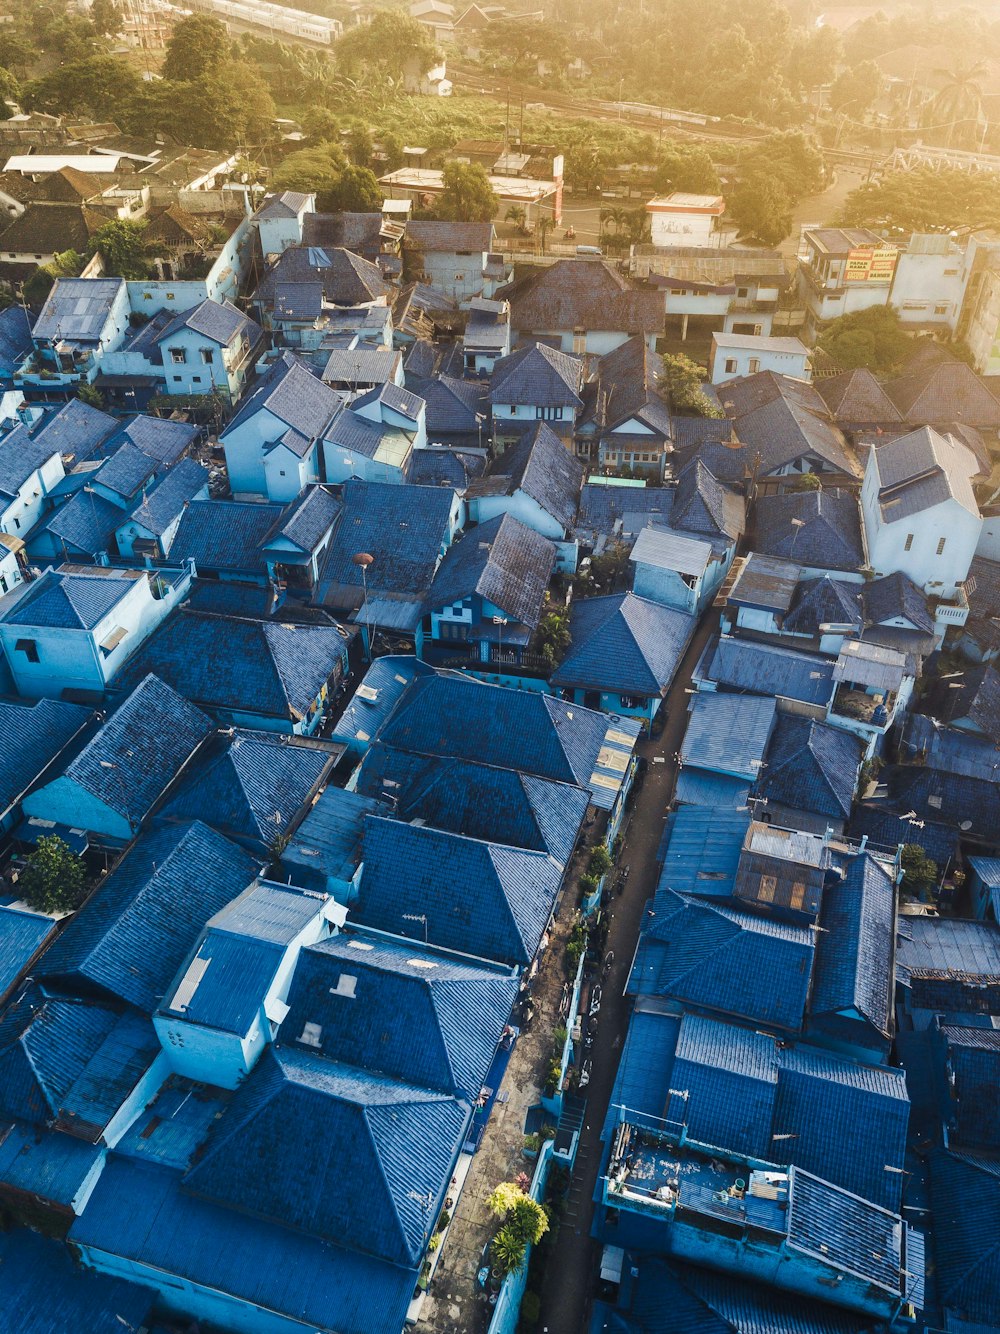 Fotografia aerea di case con tetti blu durante il giorno